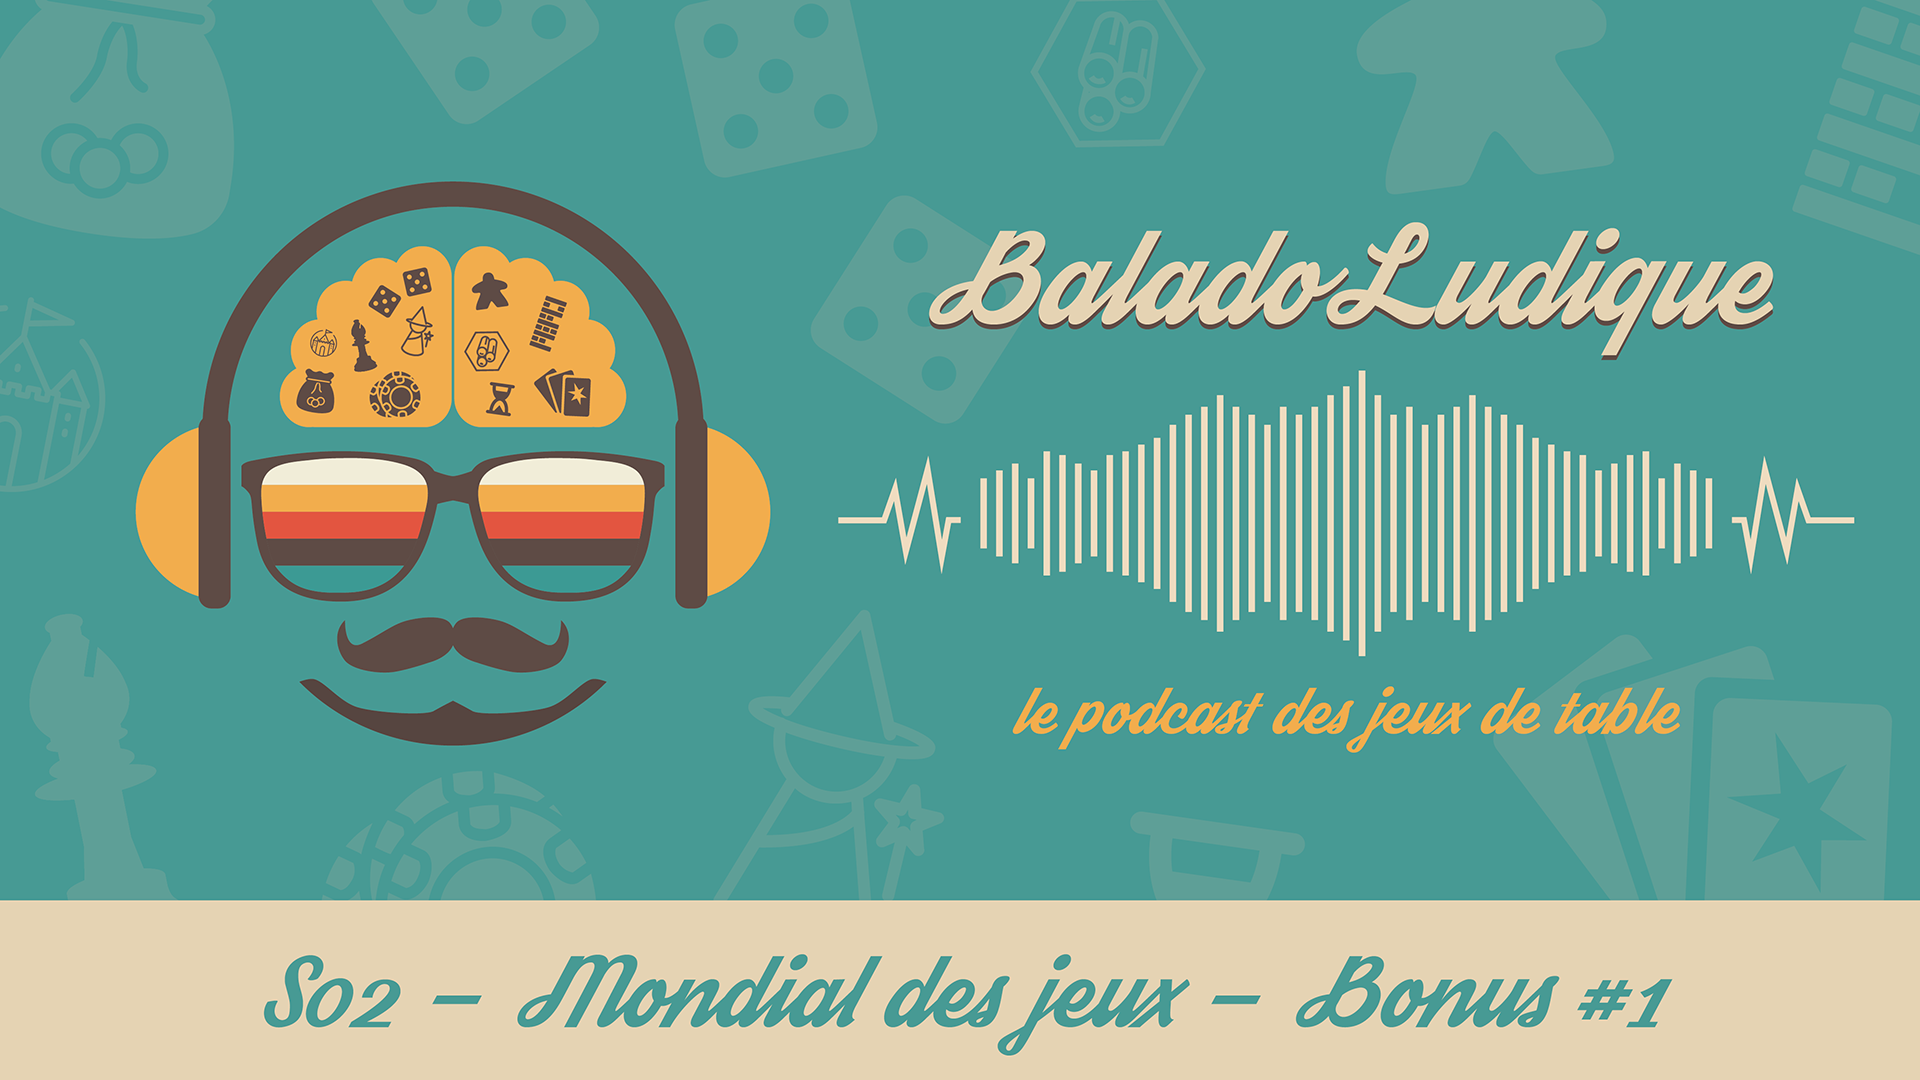 Pré-Mondial des jeux Loto-Québec - BaladoLudique - s02 Bonus1